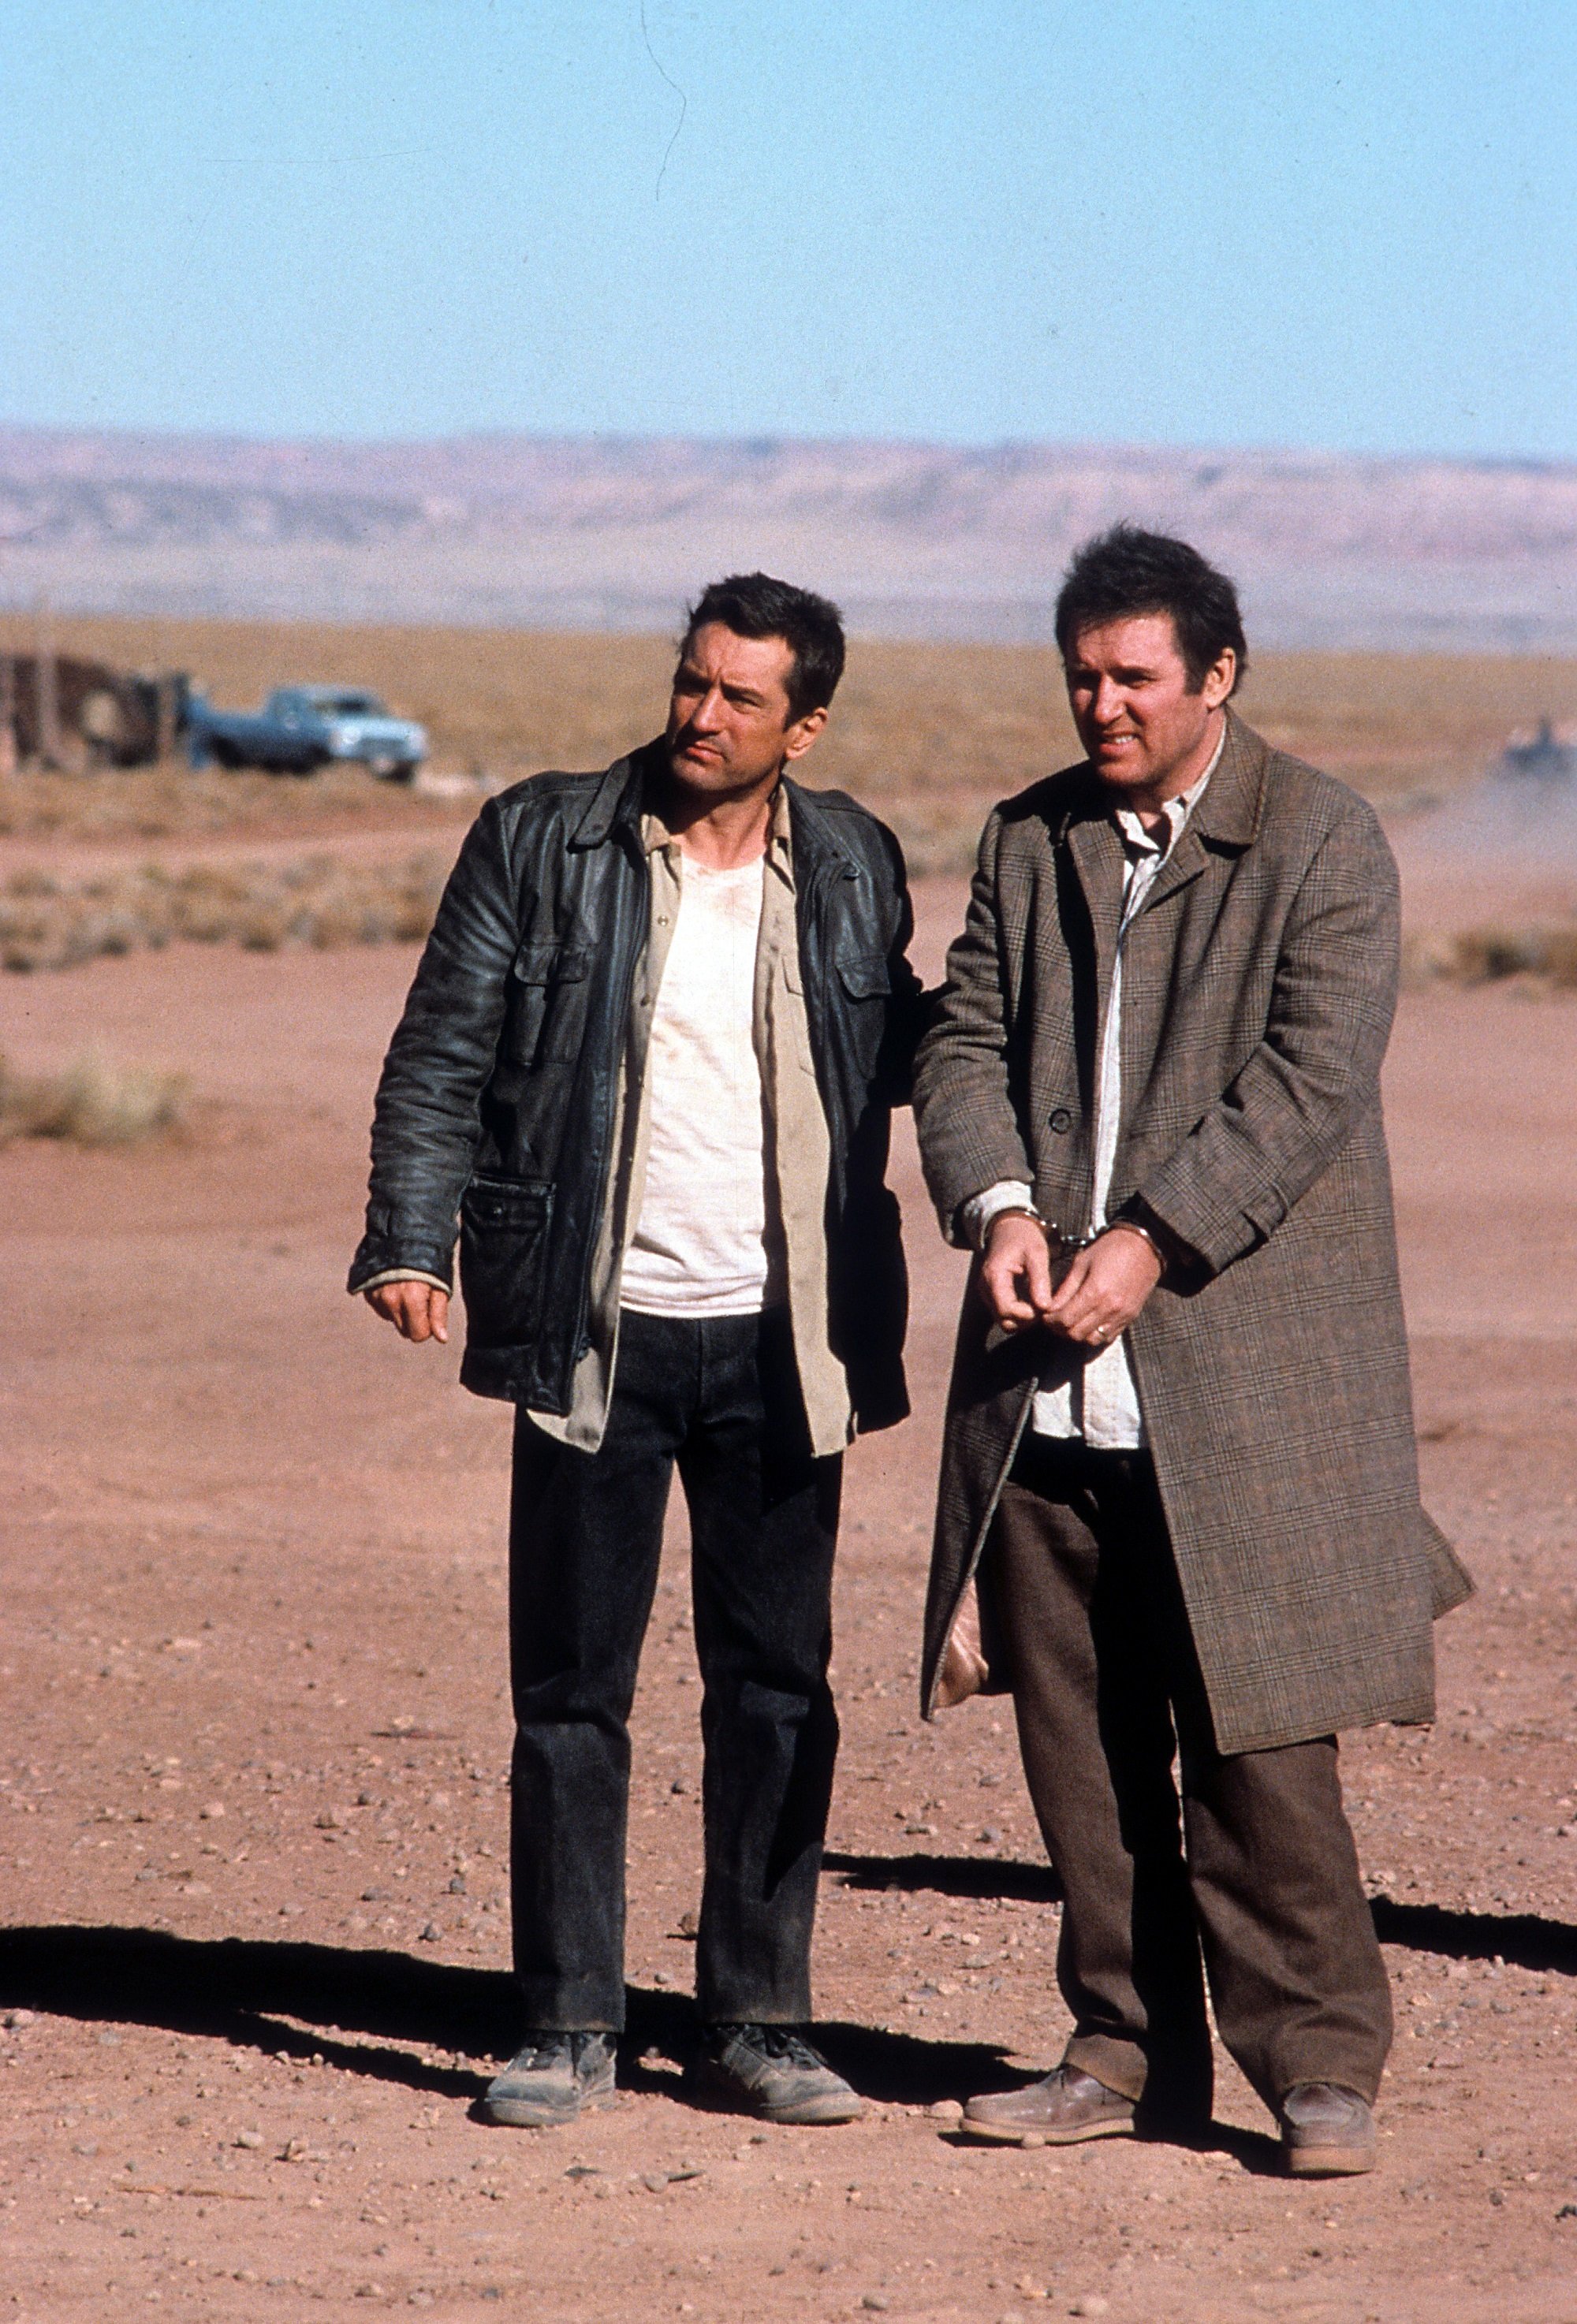 Robert De Niro leads a handcuffed Charles Grodin through the desert